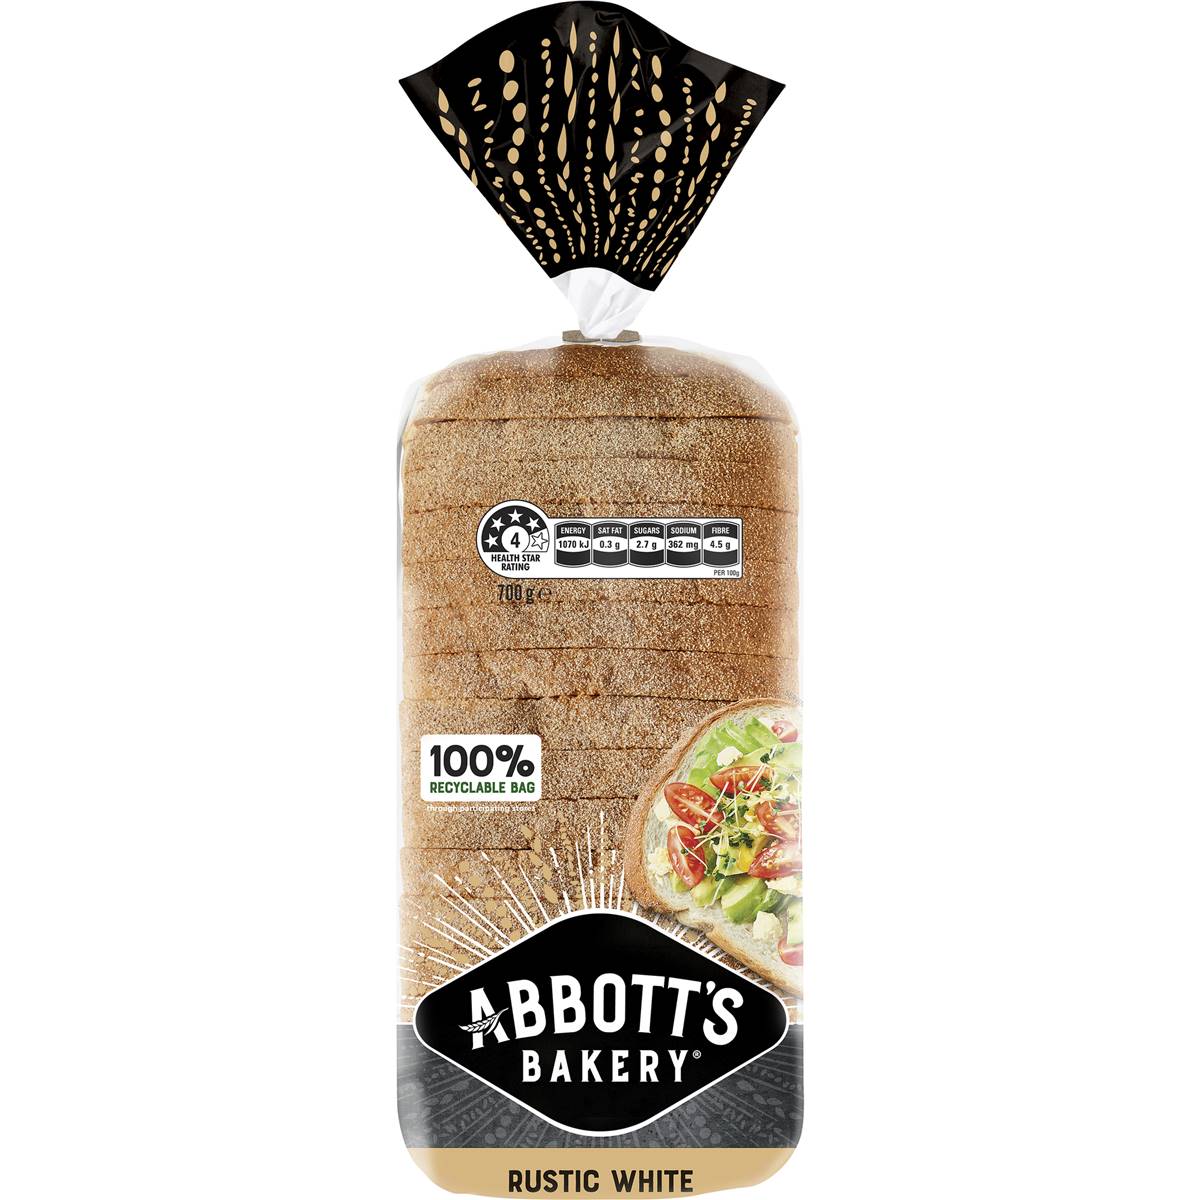 Calories in Abbott's Bakery Rustic White Sandwich Slice Bread Loaf